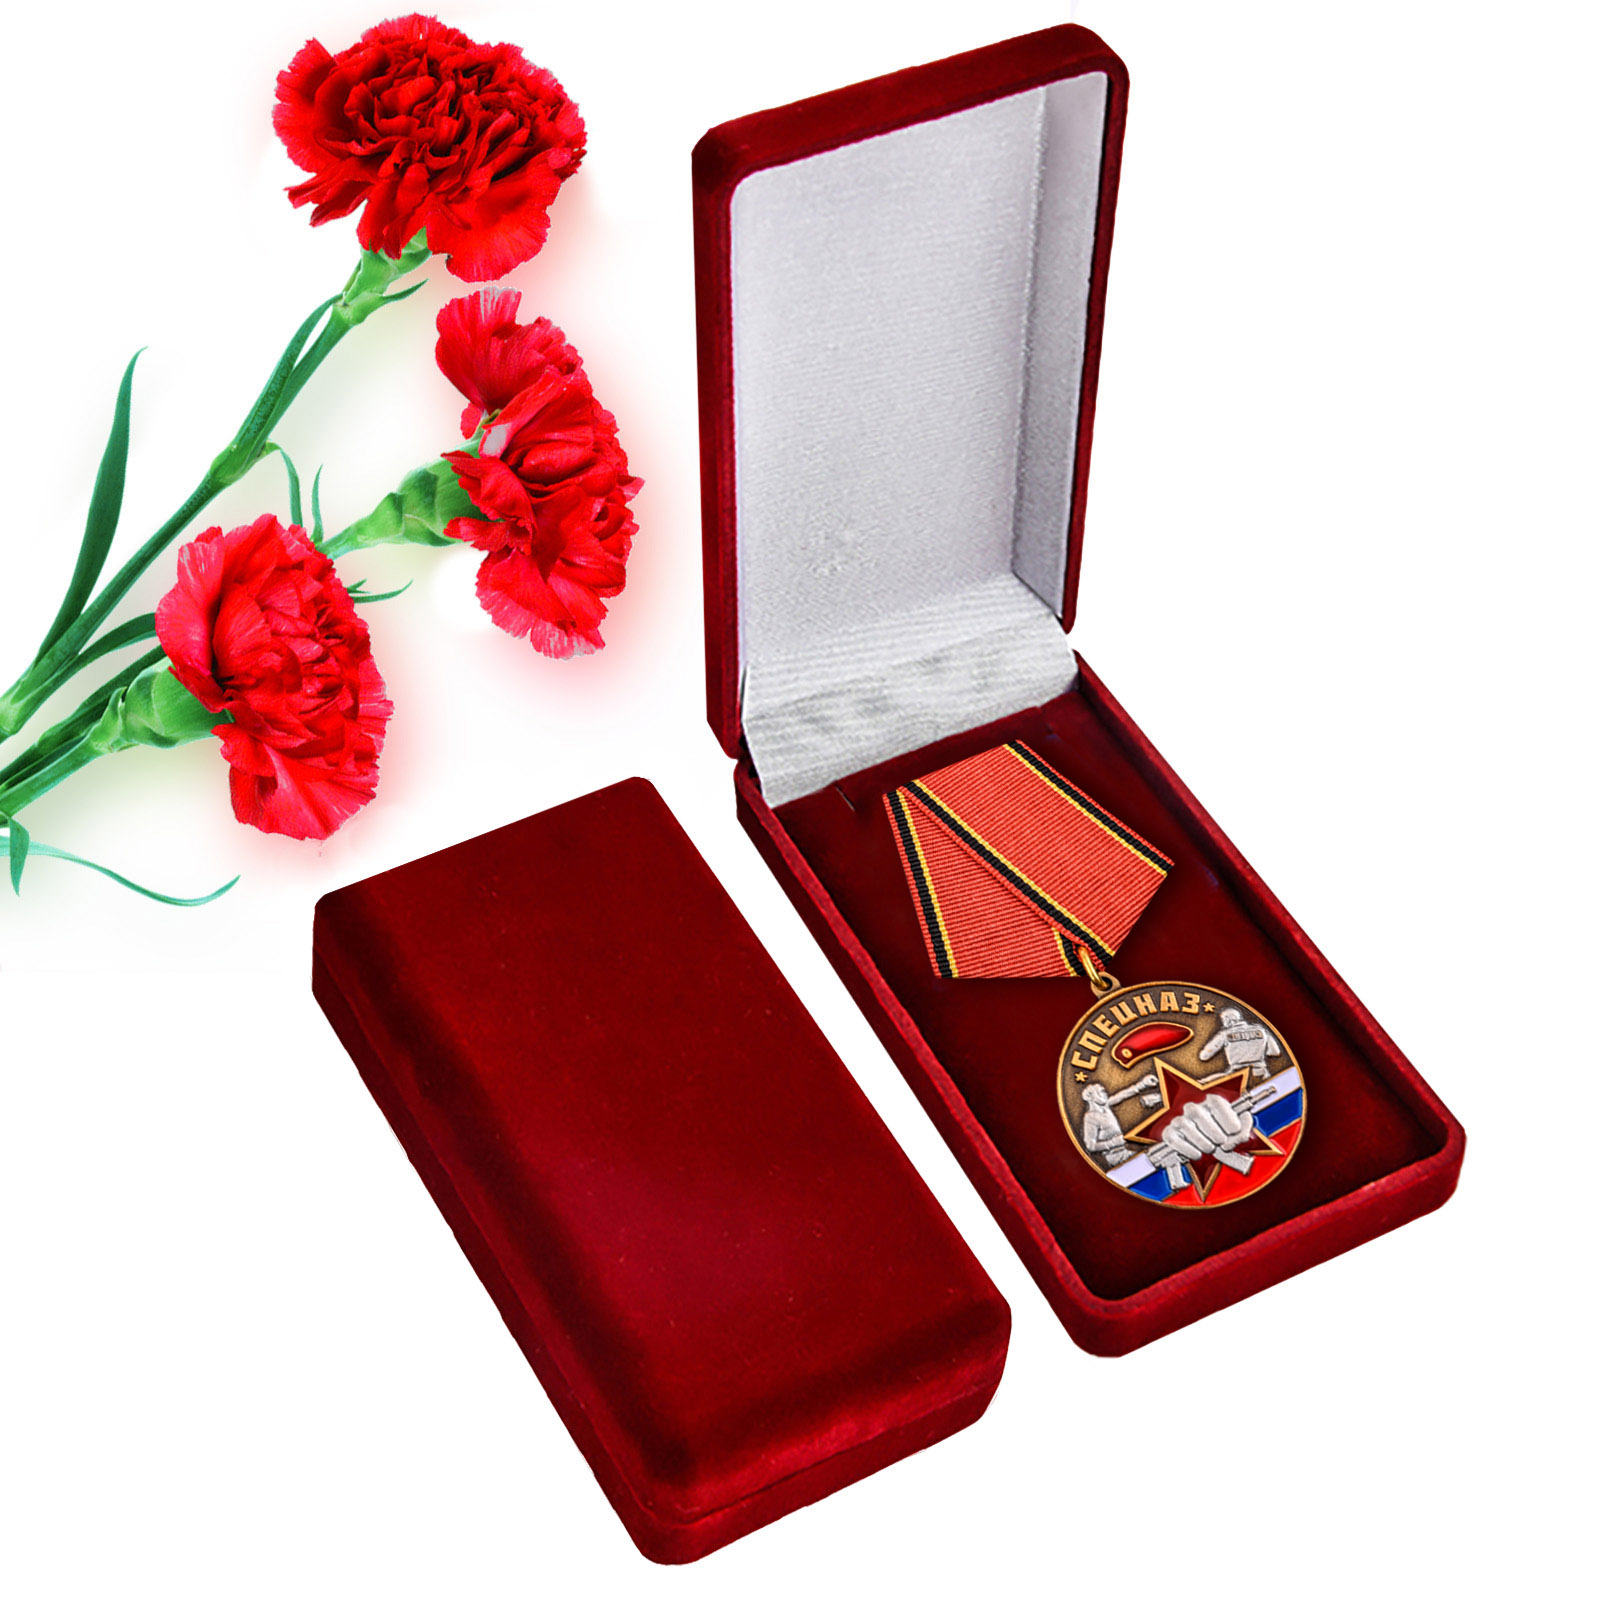 Медаль "Ветеран Спецназа Росгвардии"